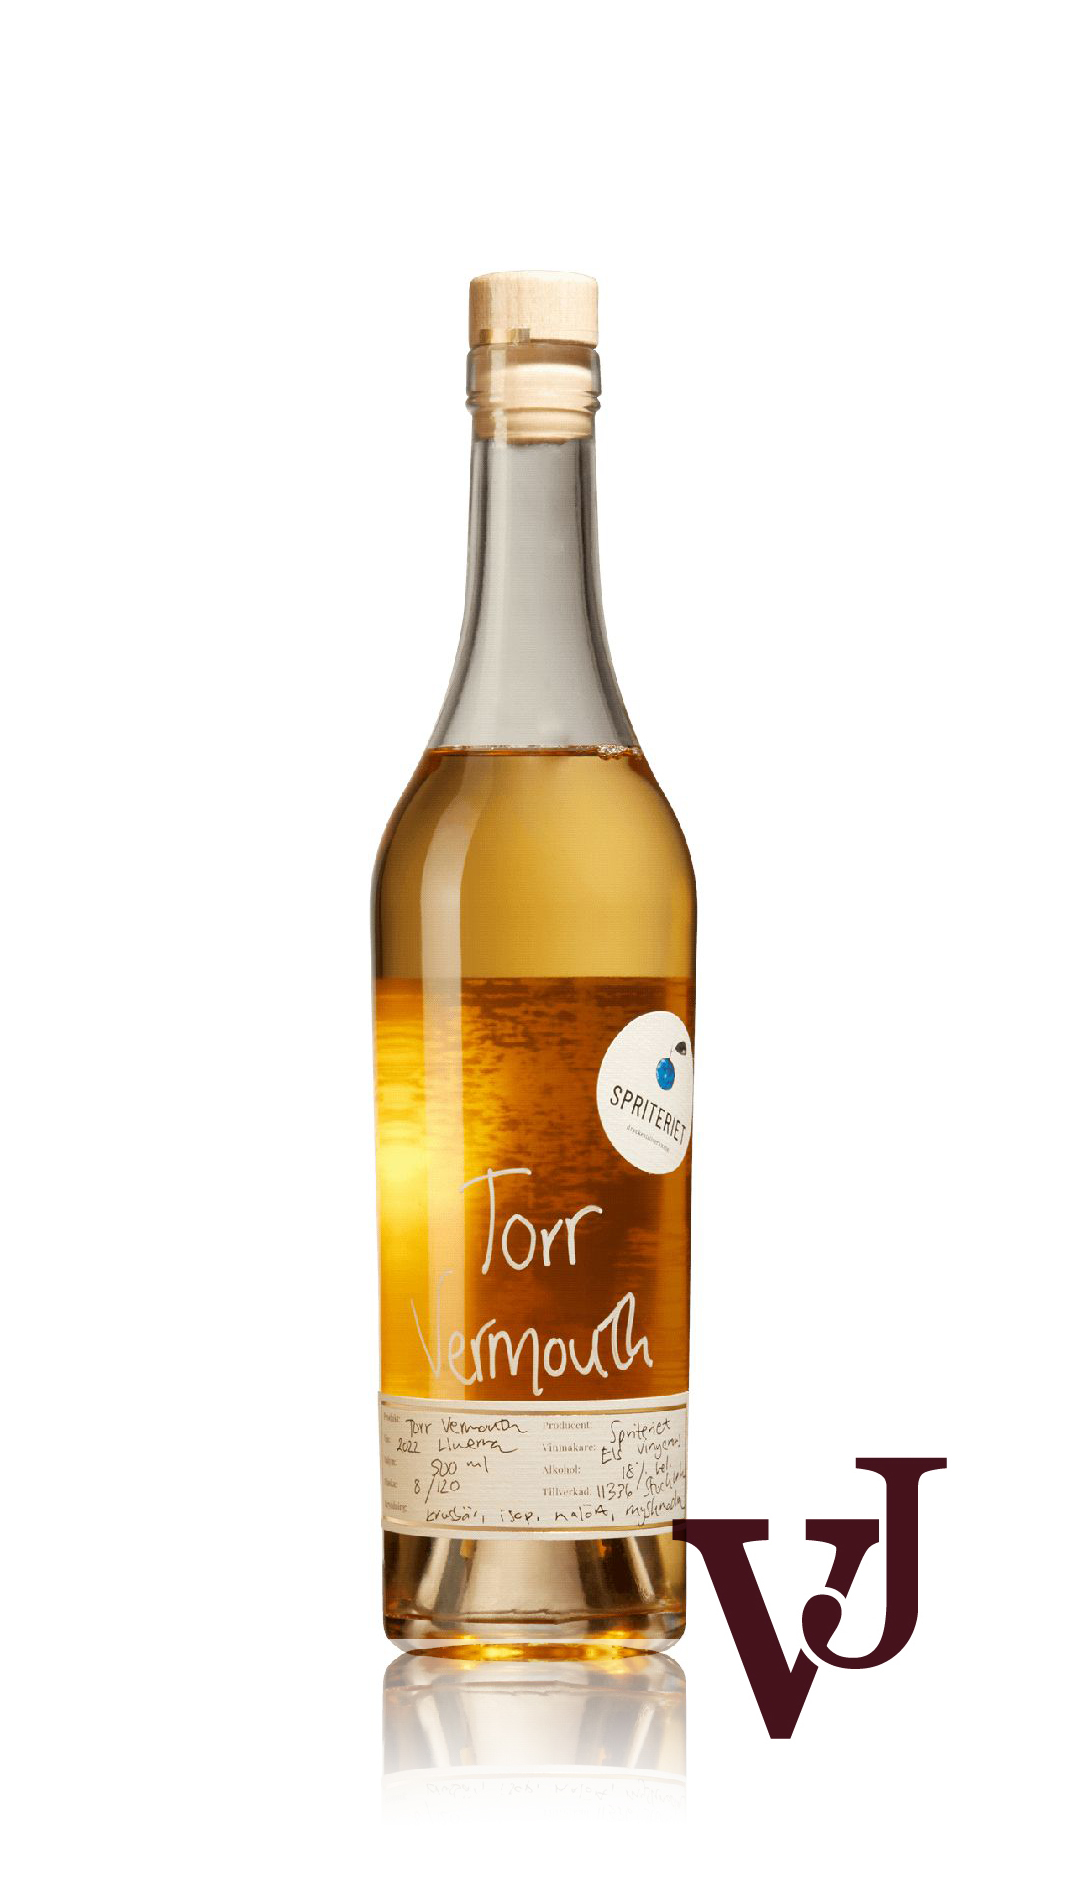 Vitt Vin - Spriteriet Torr Vermouth artikel nummer 3270302 från producenten Spriteriet från Sverige.